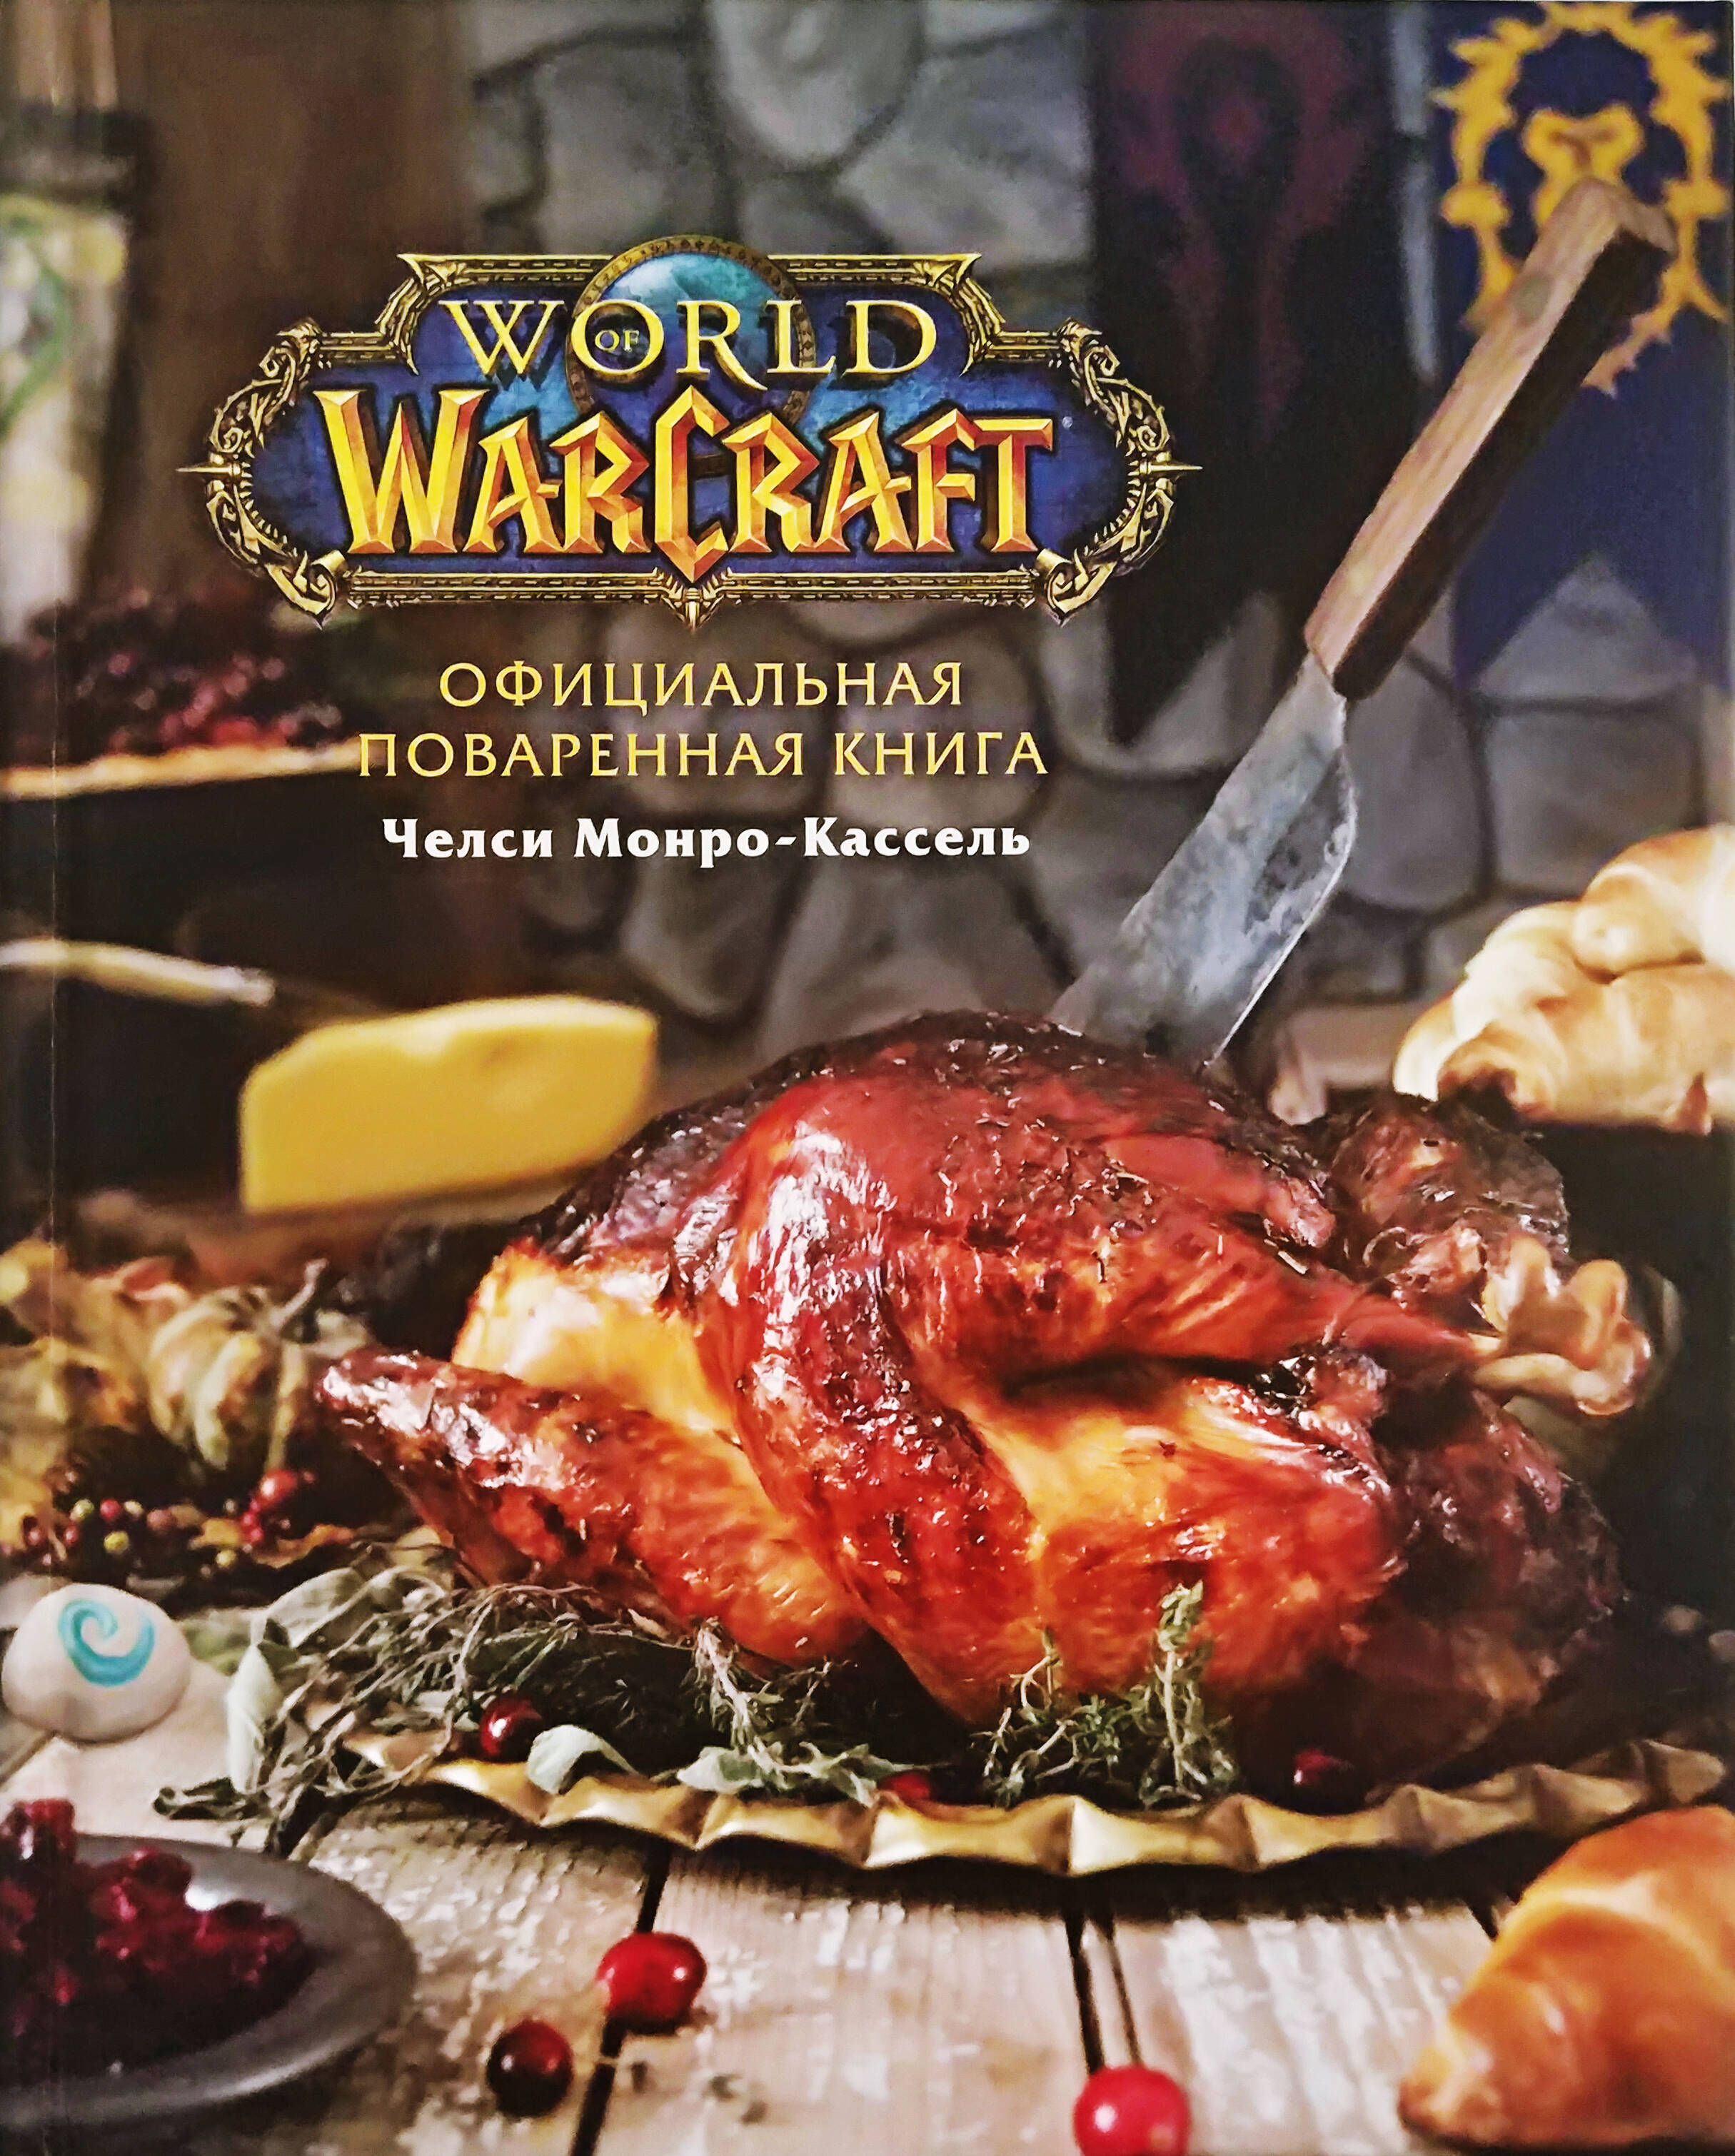 челси монро кассель и сариэн лерер пир льда и огня официальная поваренная книга игры престолов Монро-Кассель Челси Официальная поваренная книга World of Warcraft